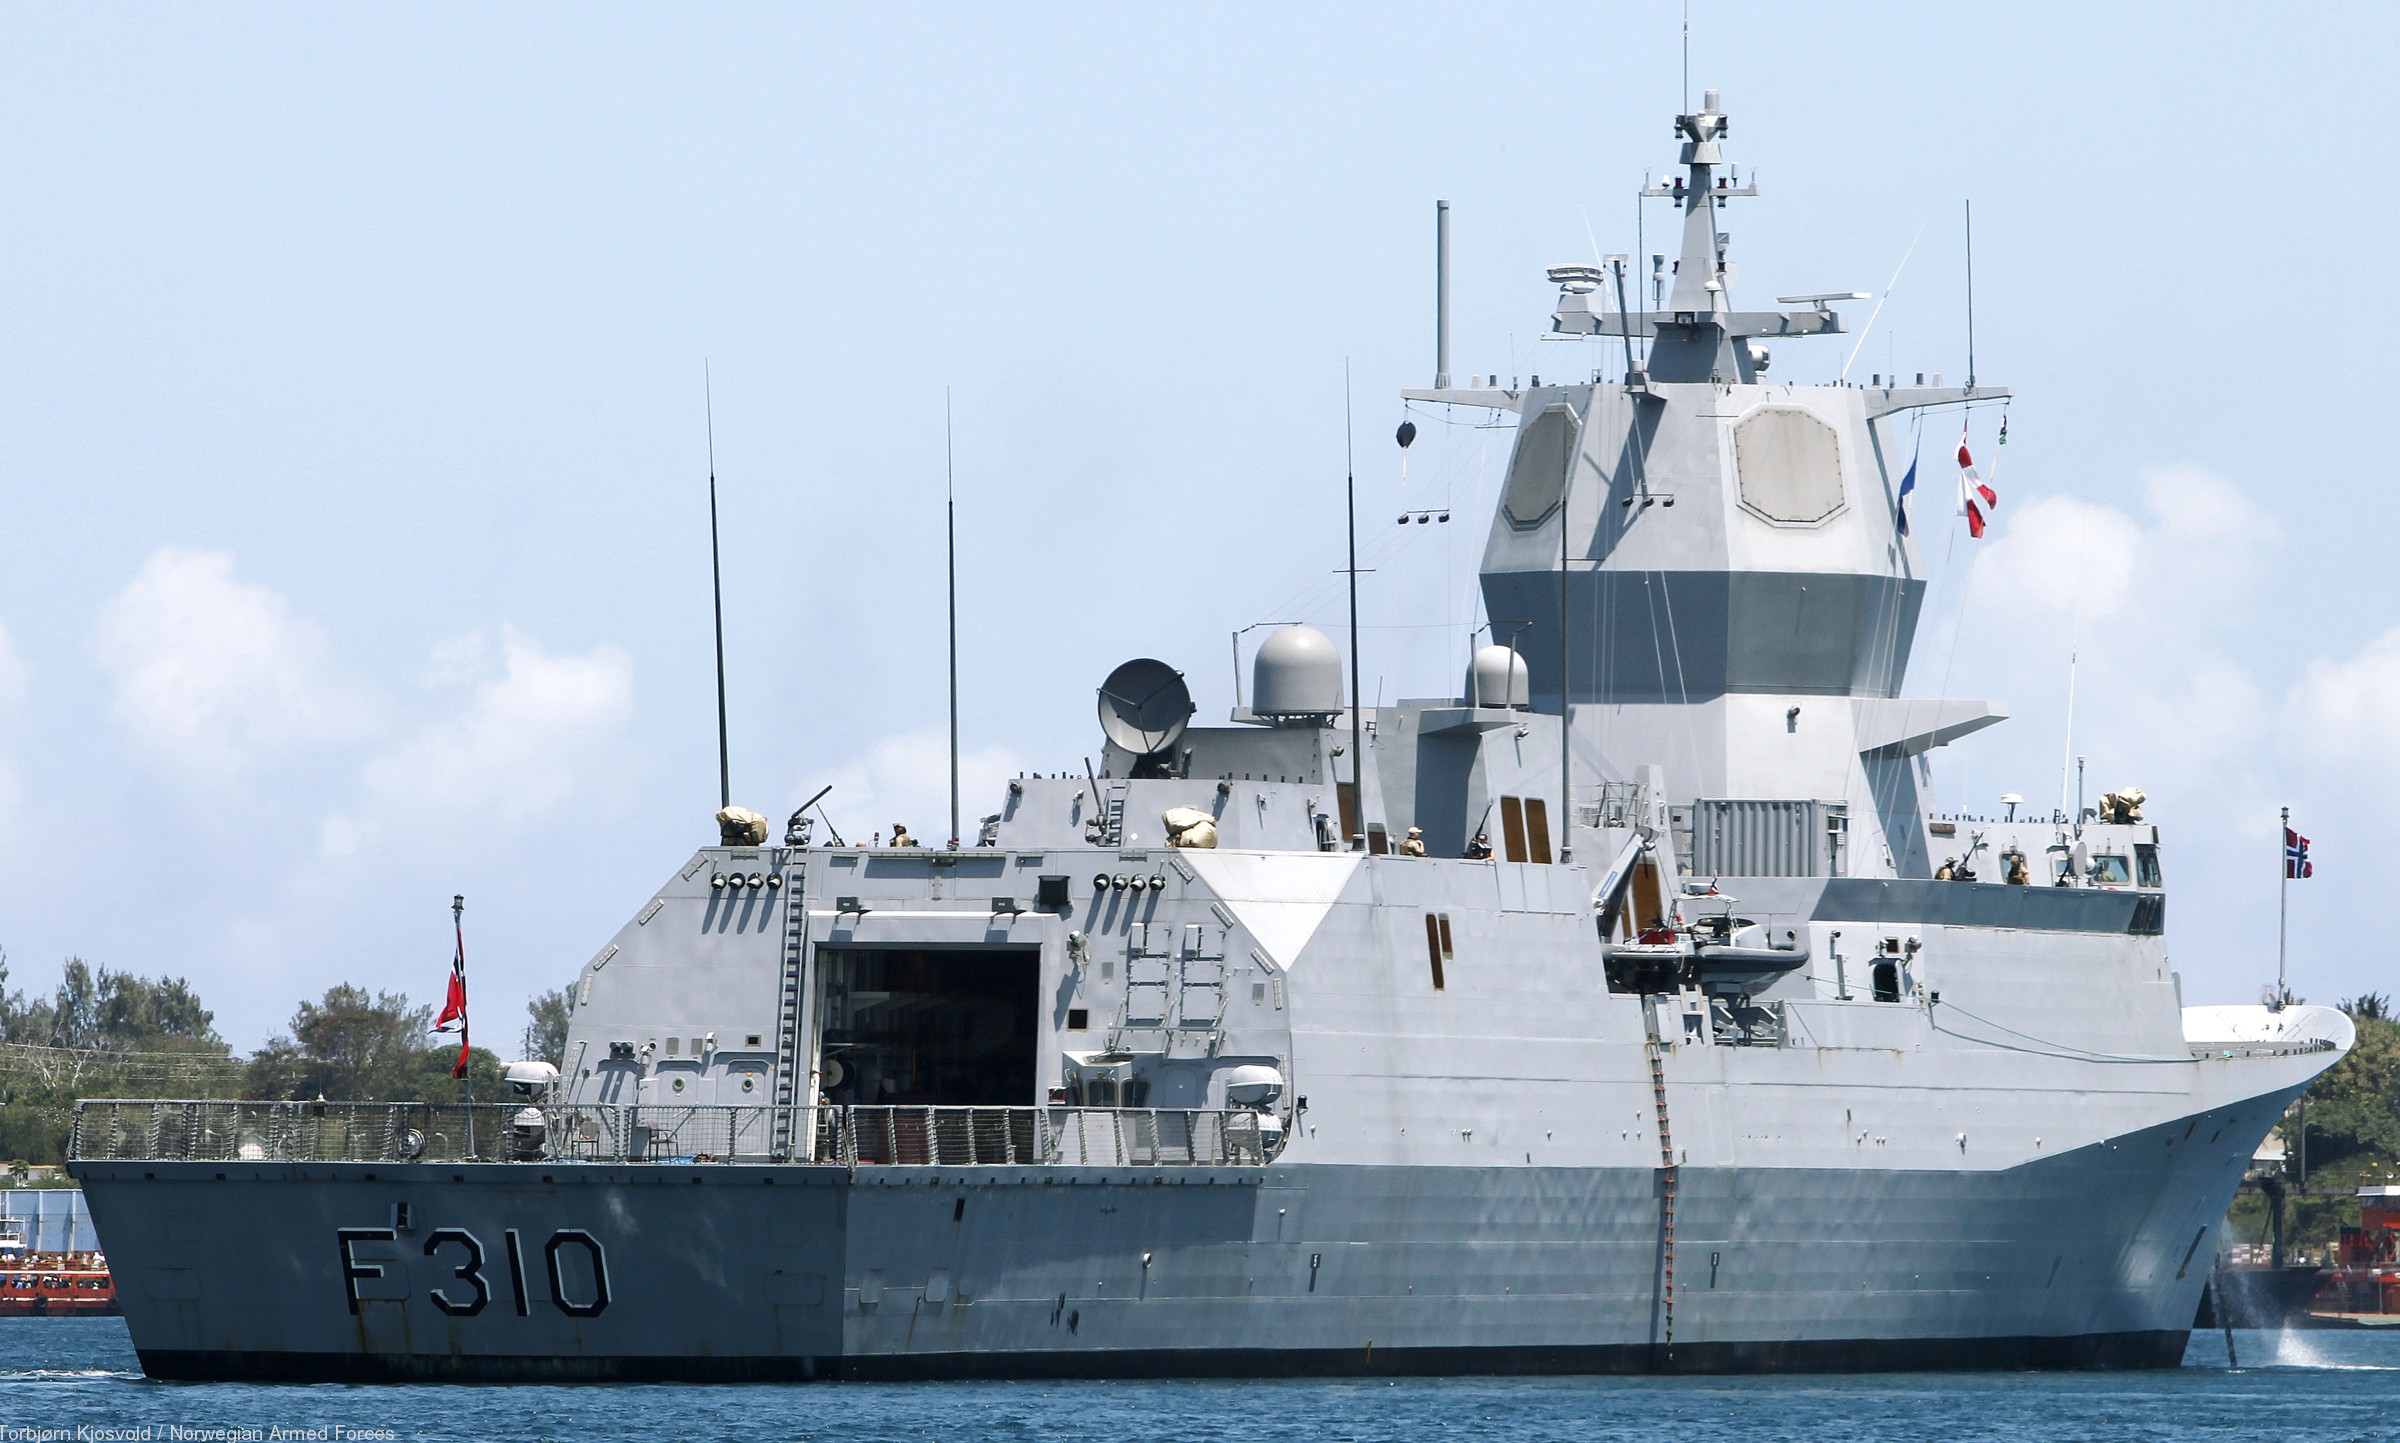 f-310 fridtjof nansen hnoms knm frigate royal norwegian navy sjoforsvaret 57